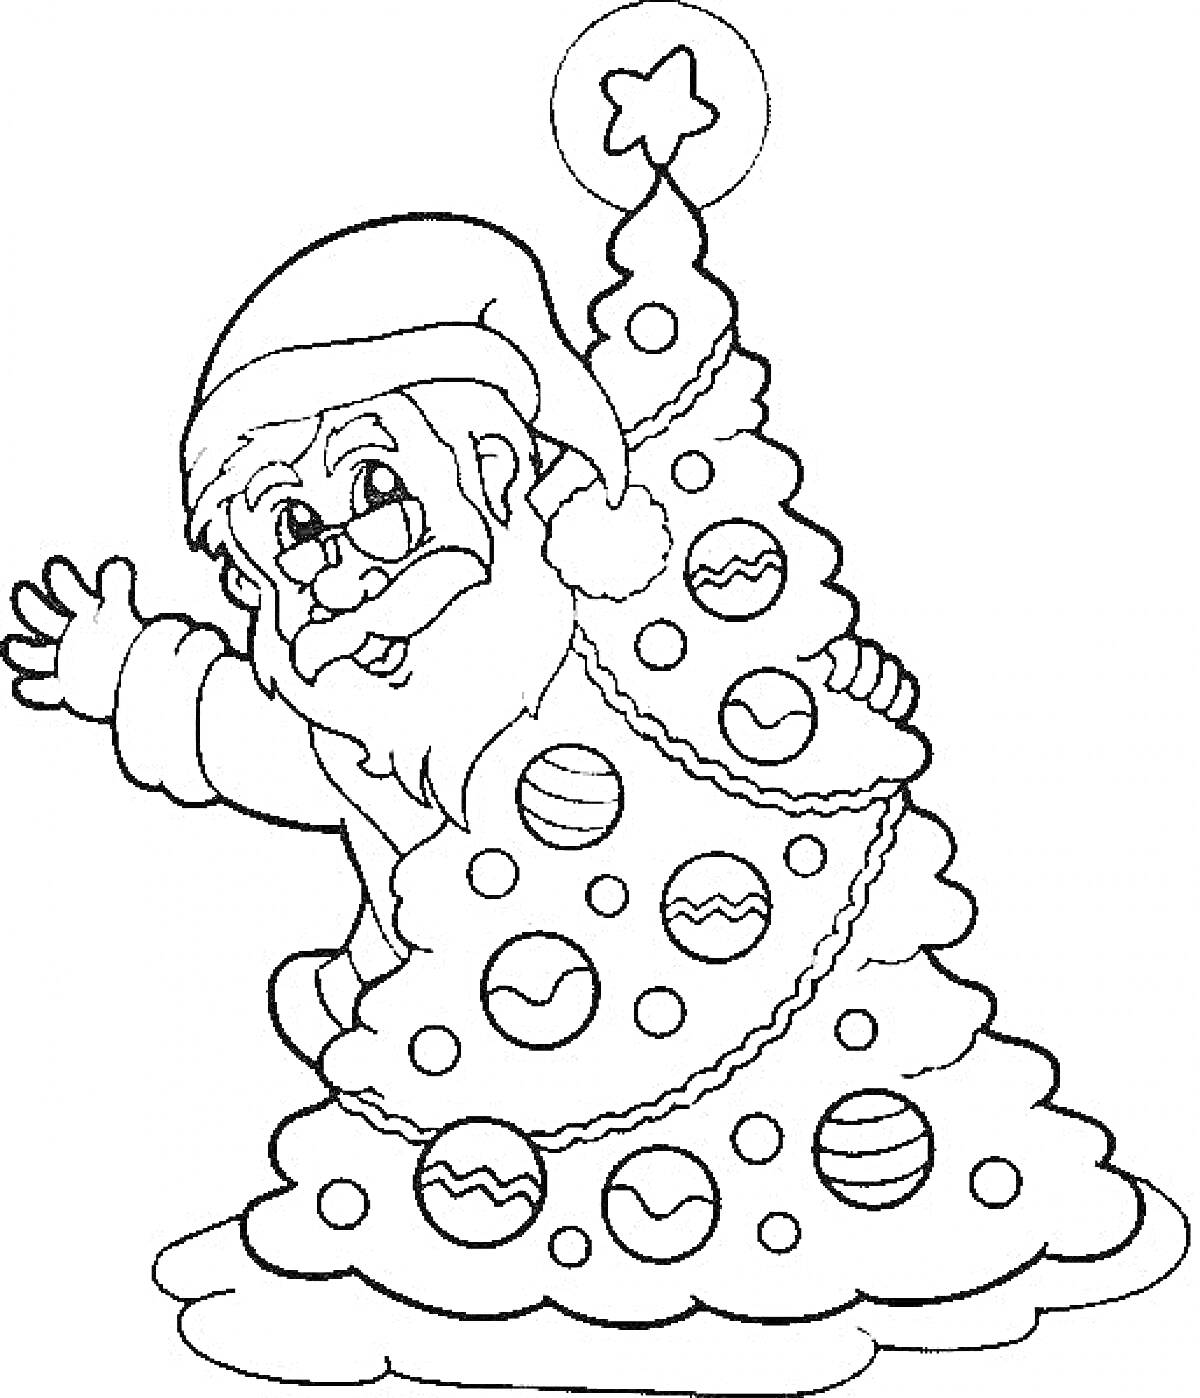 Раскраска Санта Клаус за рождественской ёлкой с украшениями